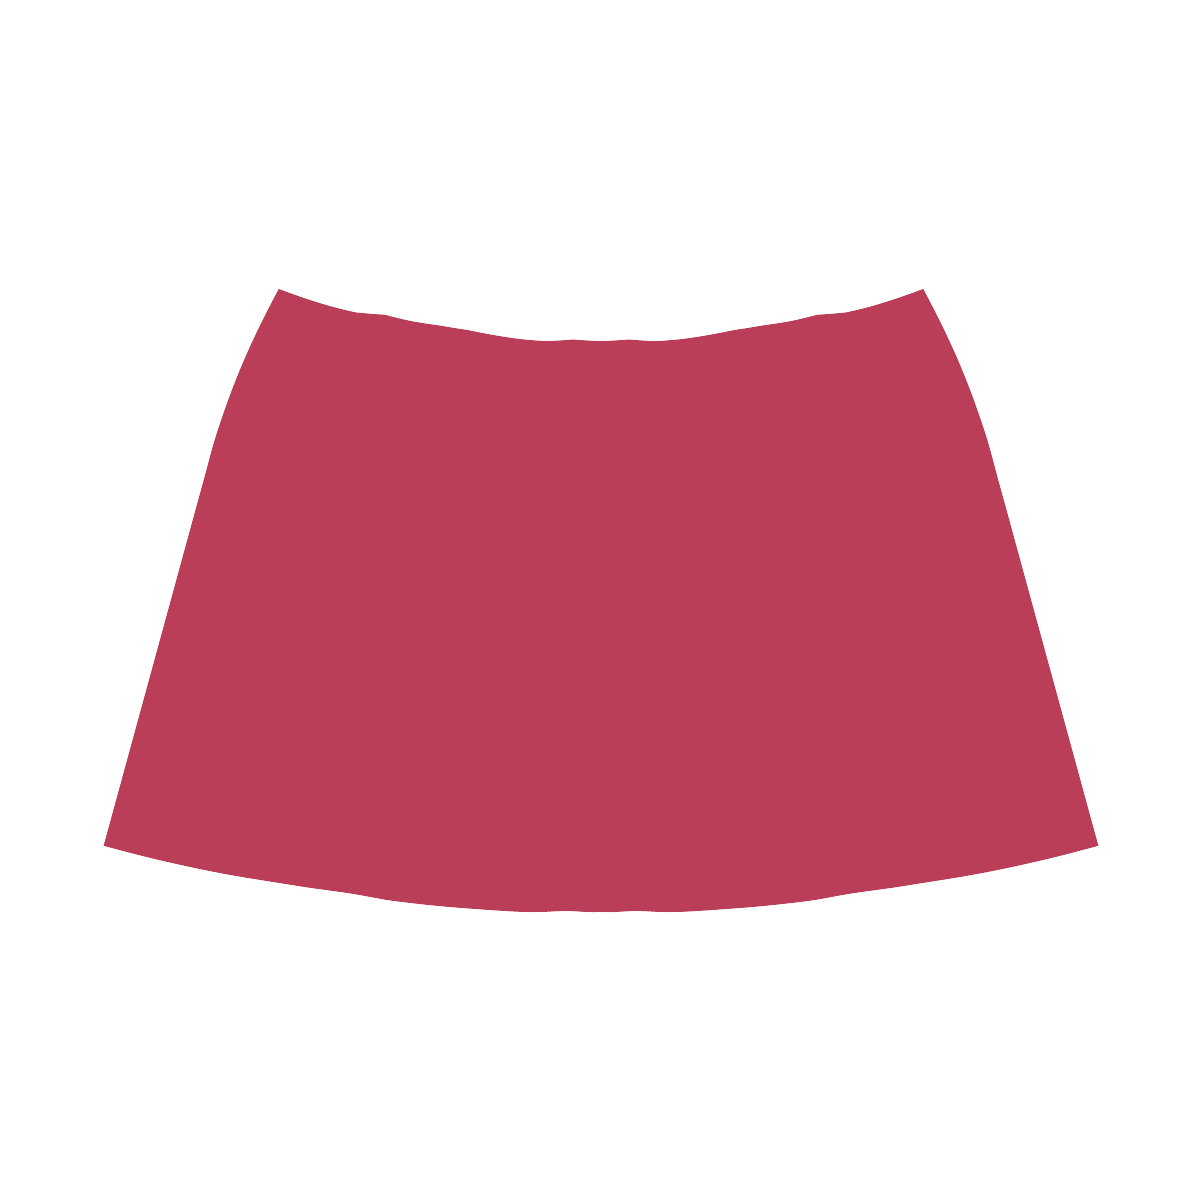 Lipstick Red Mnemosyne Women's Crepe Skirt (Model D16)